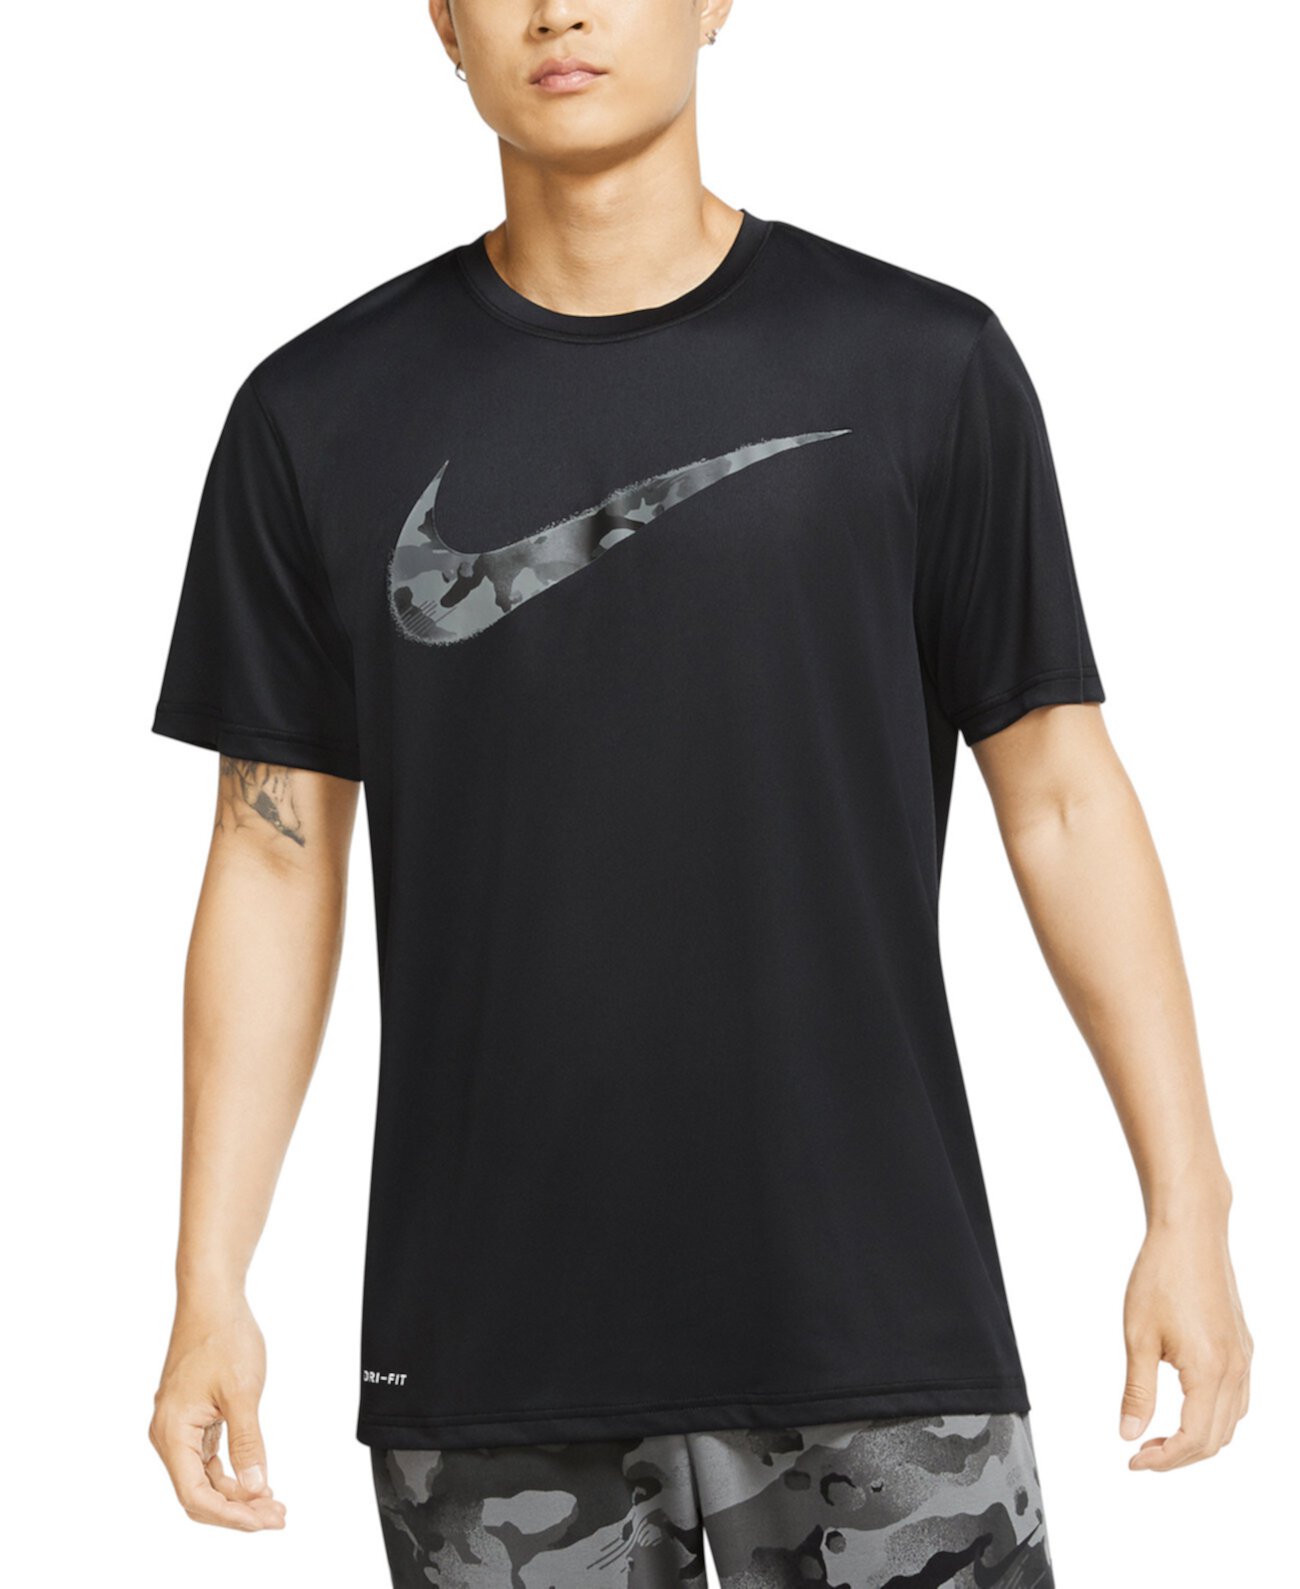 Мужская футболка с камуфляжным принтом для тренинга Nike